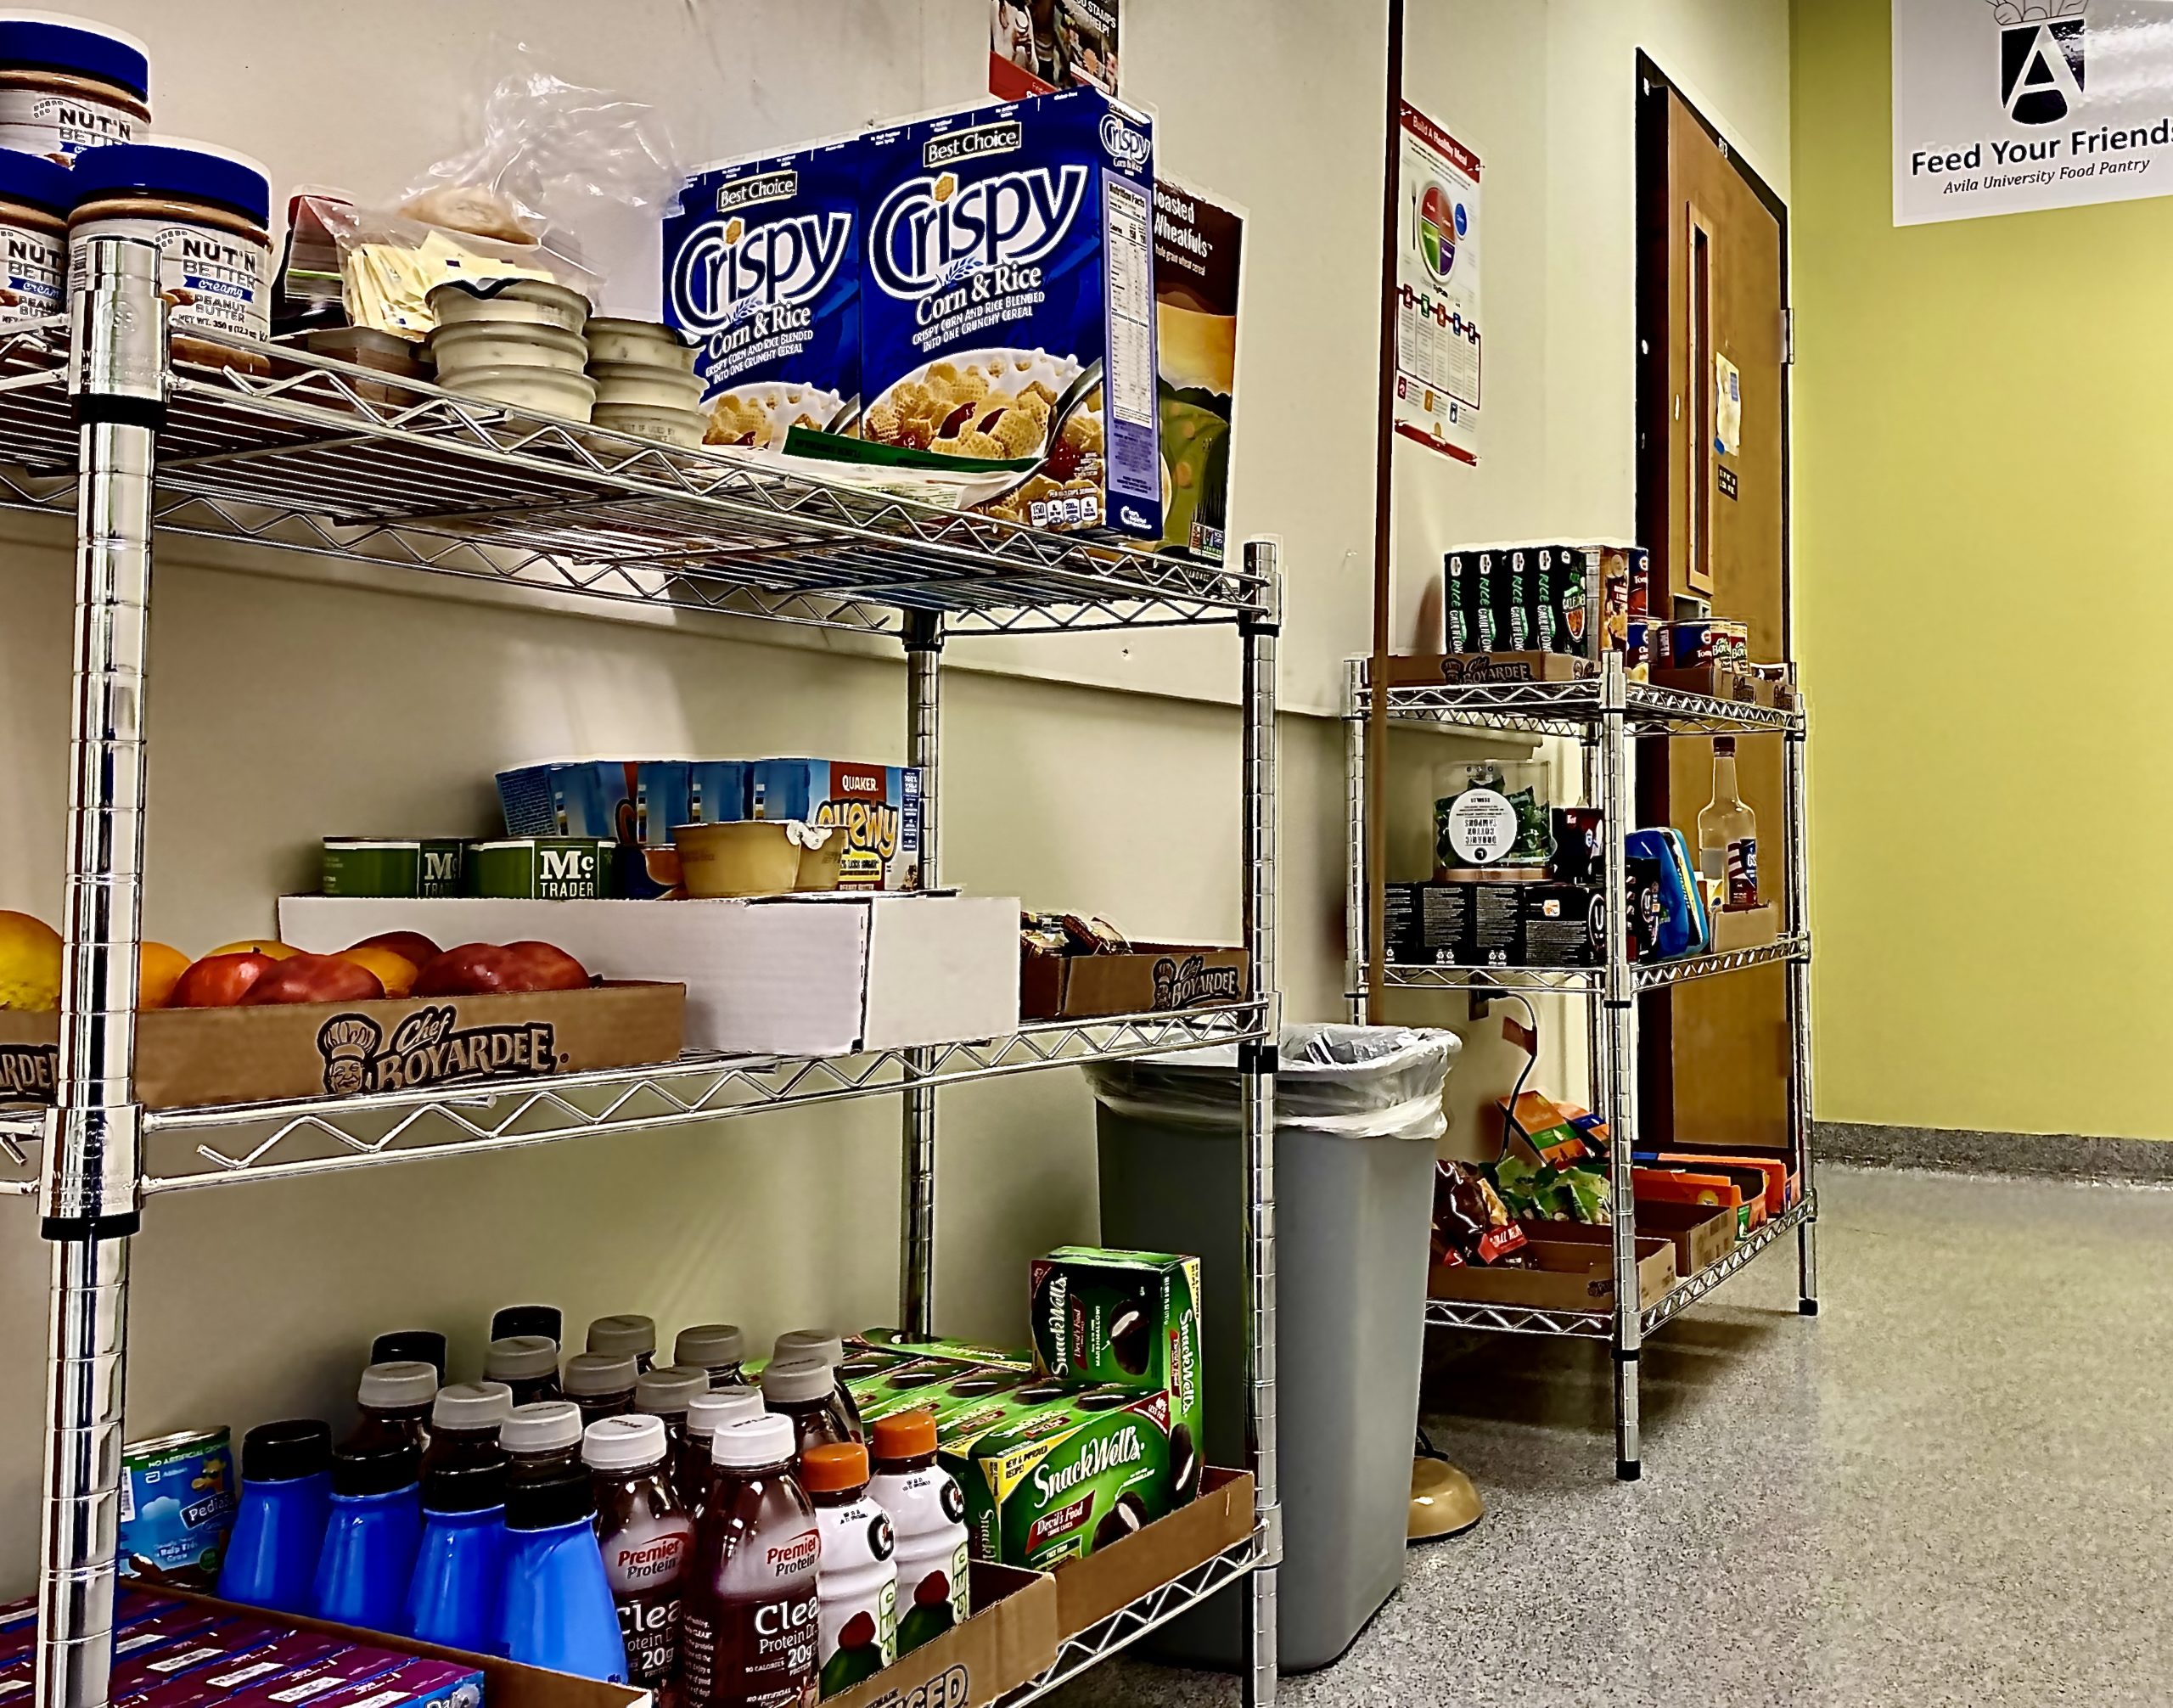 Image of shelves in Avila University food pantry